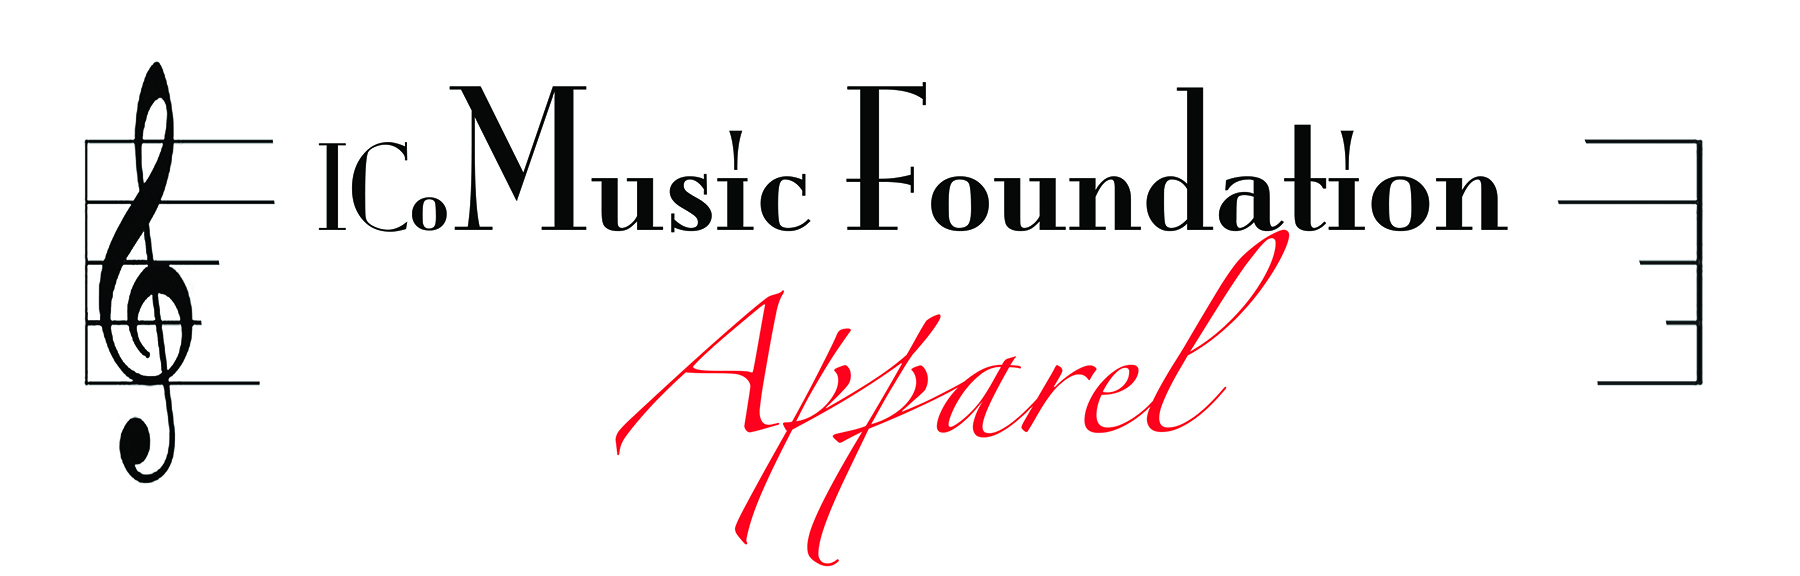 ICoMusic Foundatio Apparel Logo